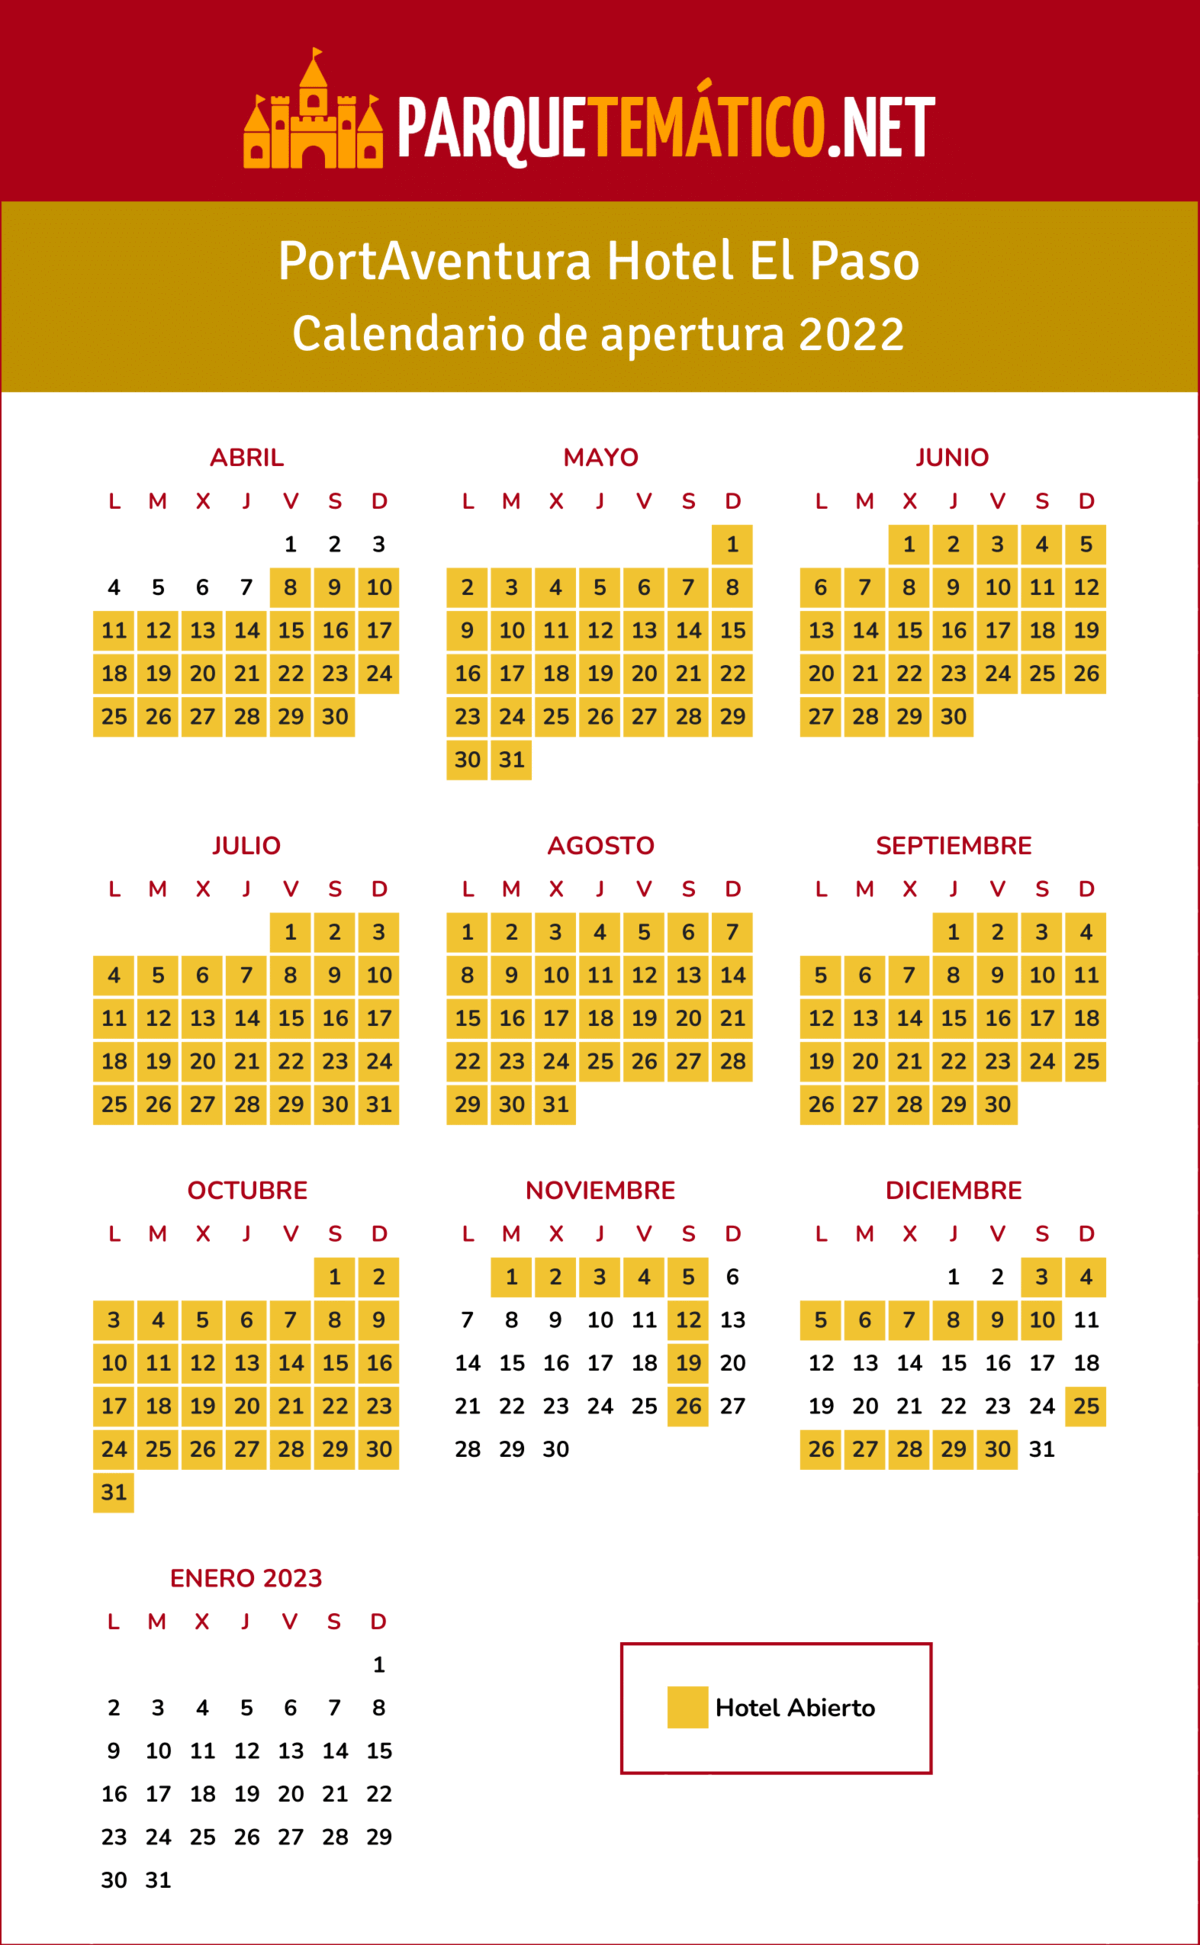 Calendario de apertura 2022 del hotel El Paso en PortAventura World